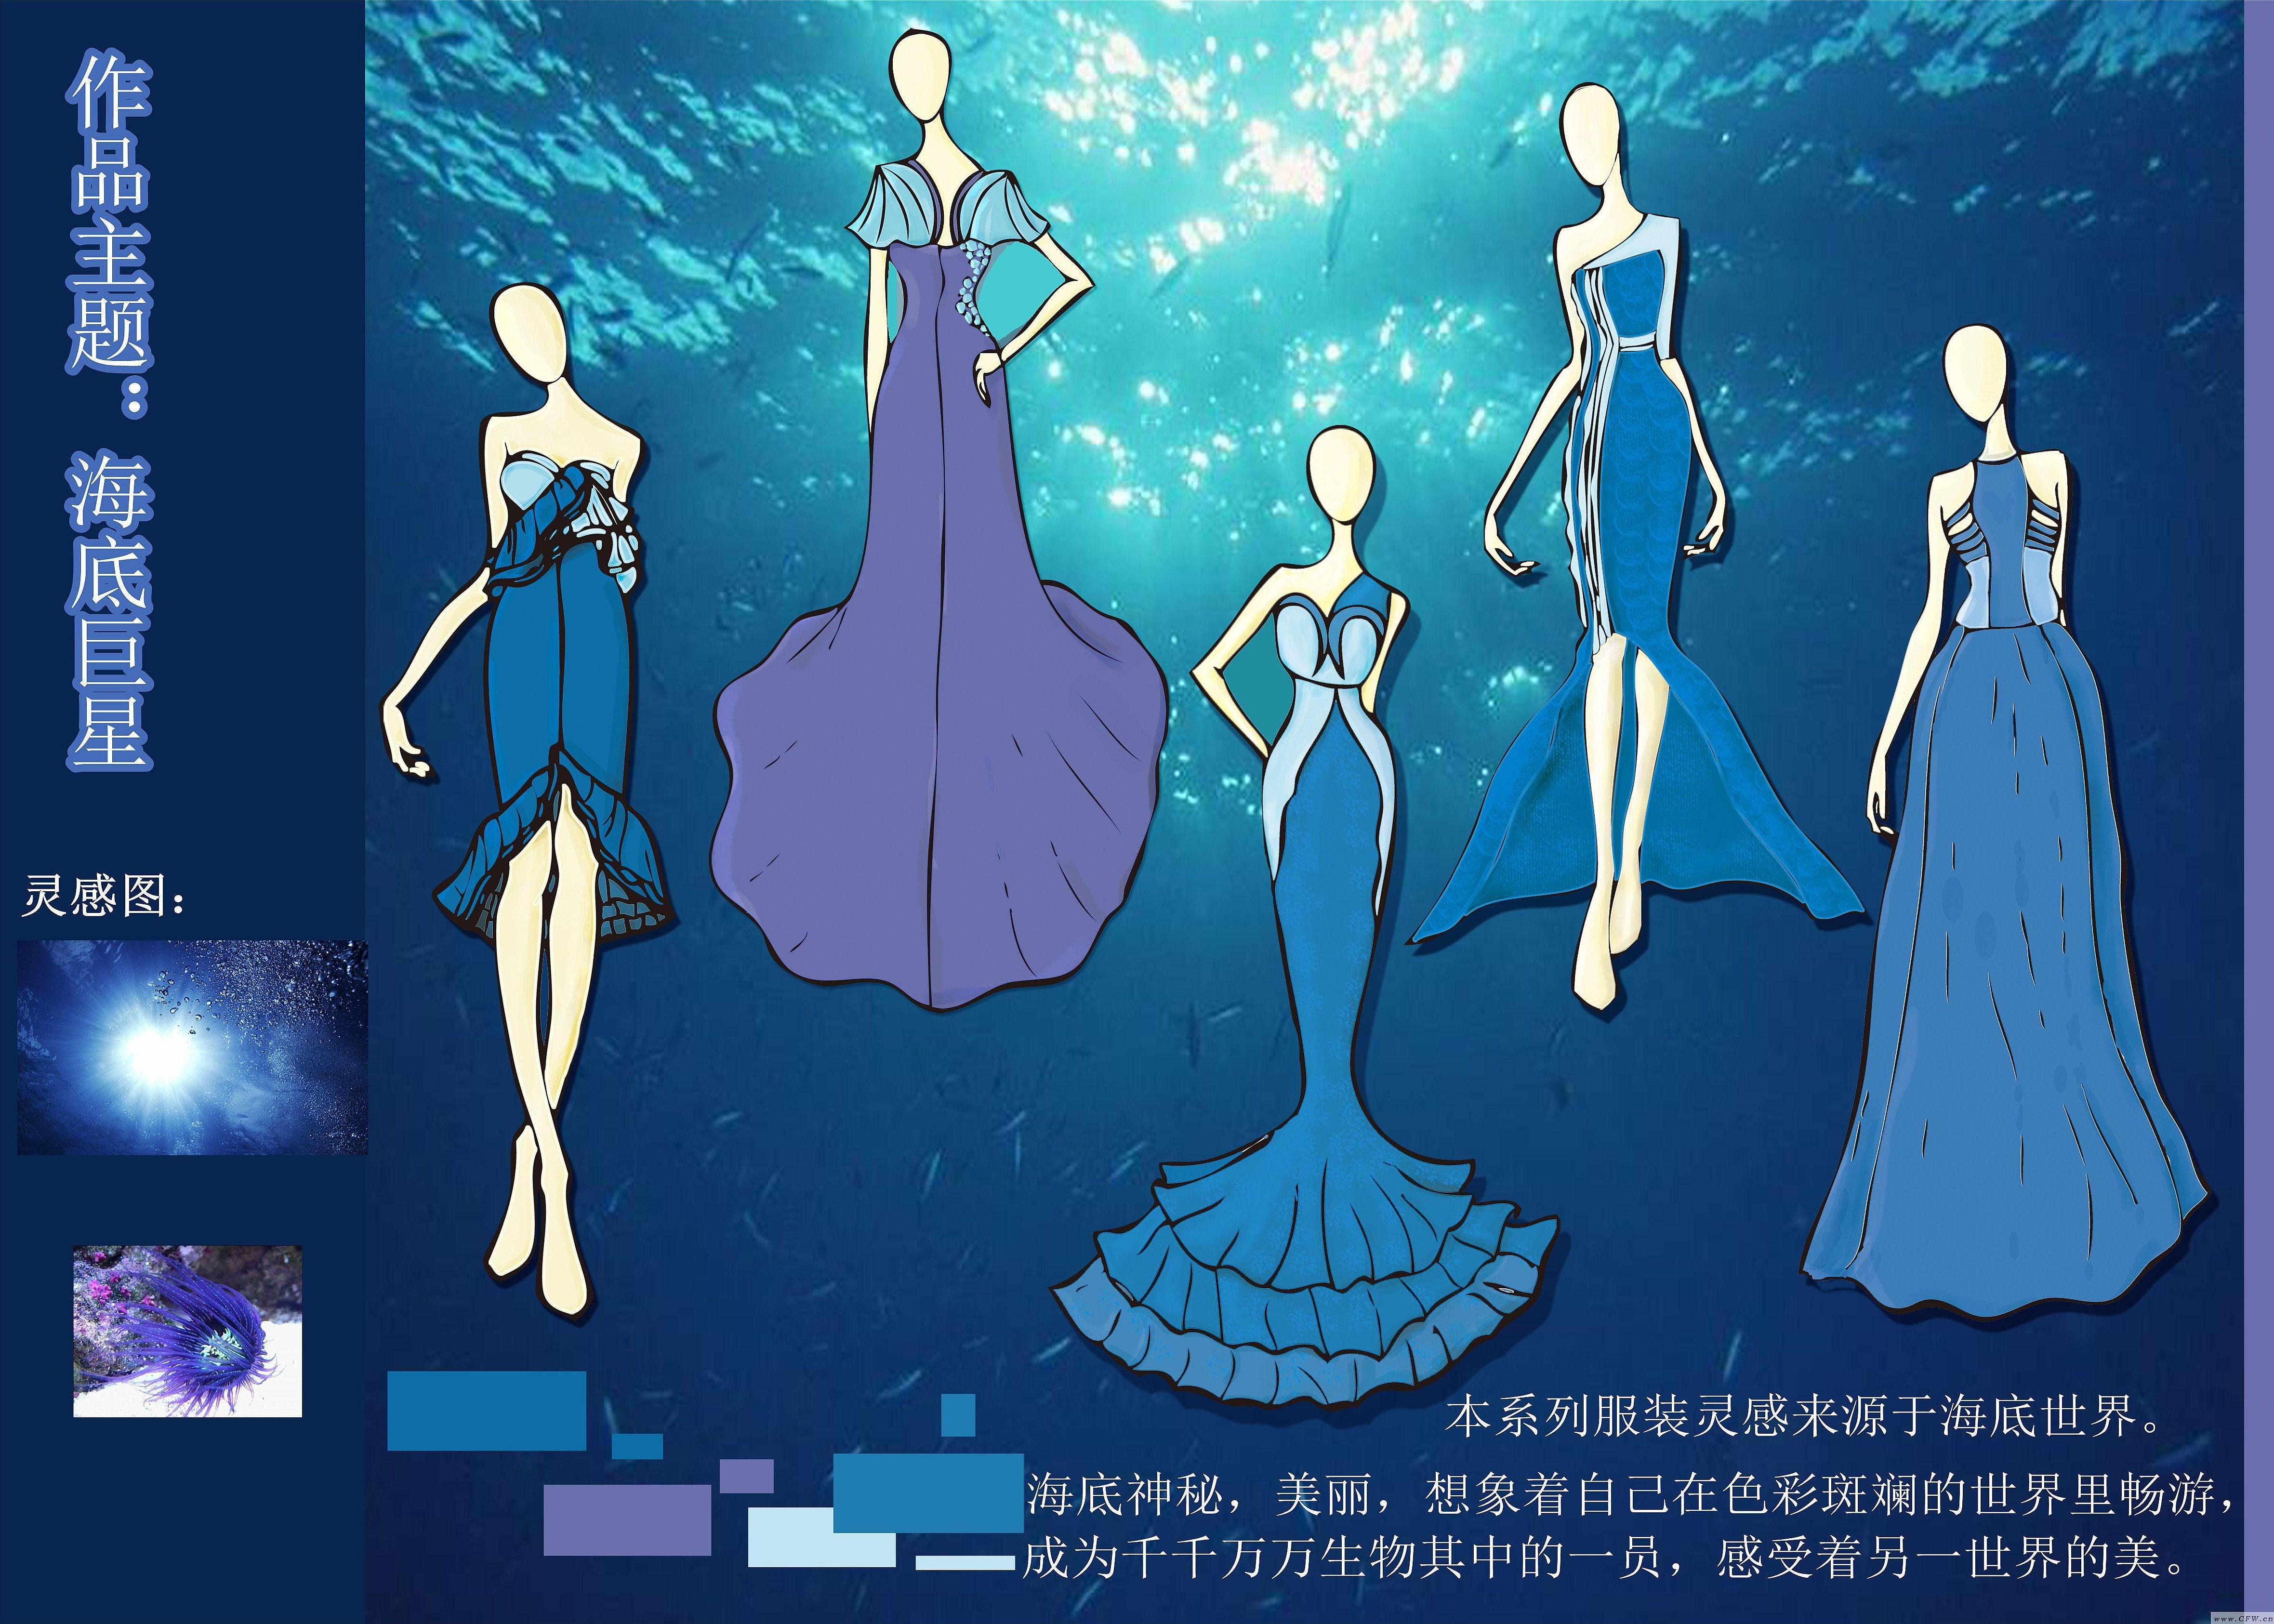 海底巨星-婚纱礼服设计-服装设计